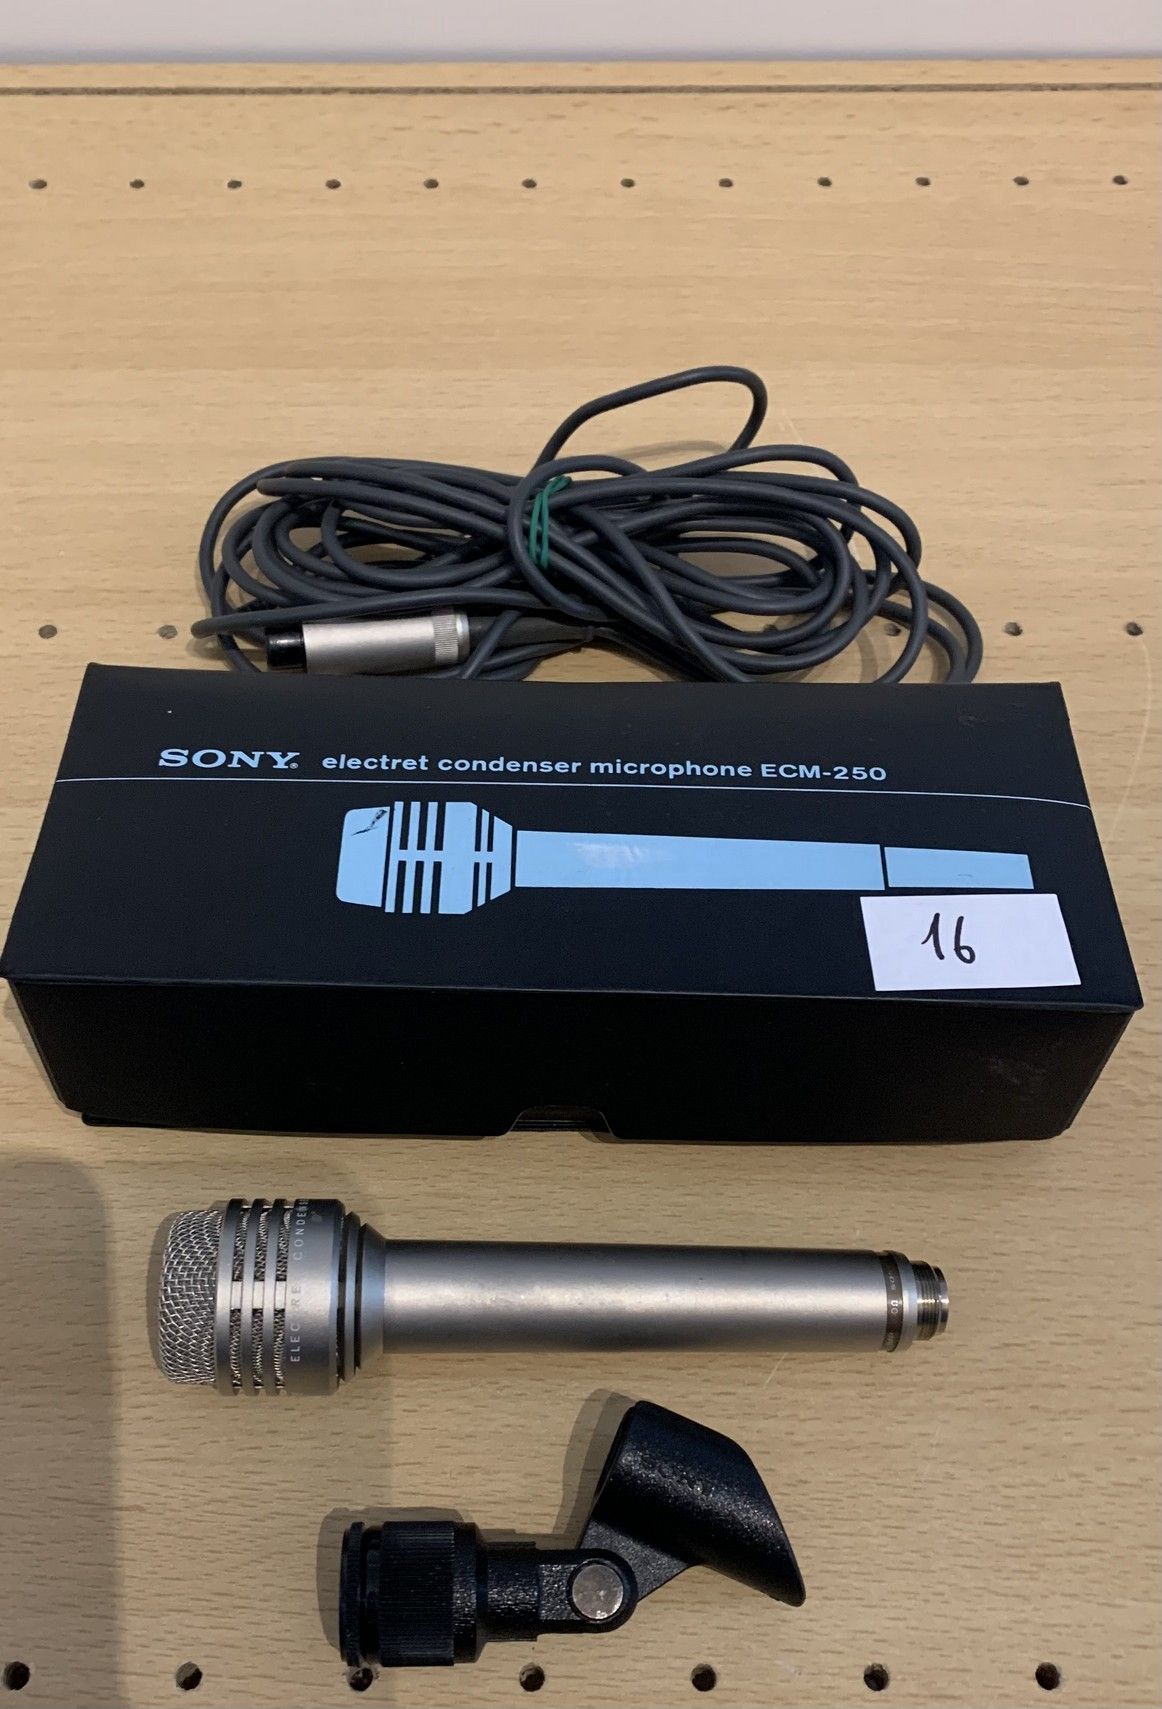 Null Microfono a condensatore/elettrete, SONY, ECM 250
Buone condizioni estetich&hellip;